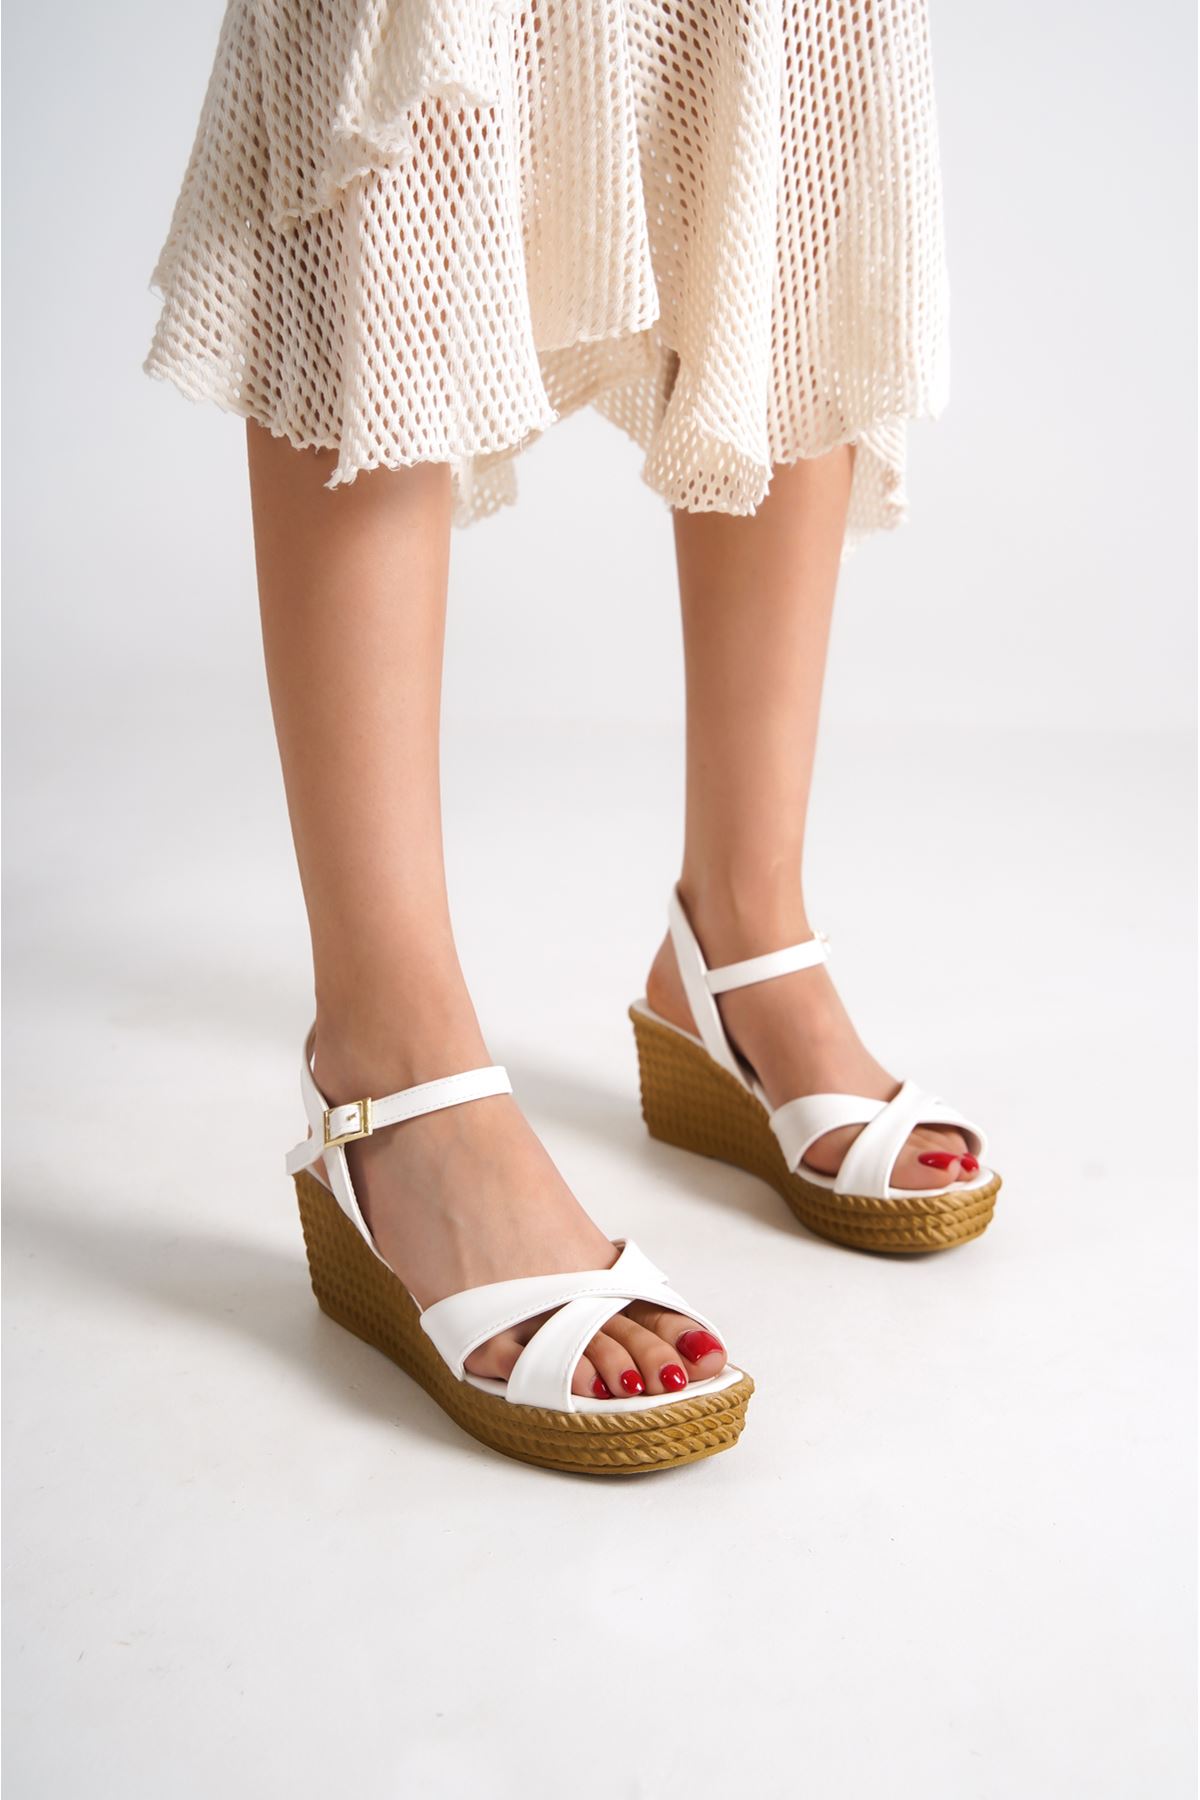 Darian Beyaz Mat Deri Dolgu Topuklu Kadın Ayakkabı